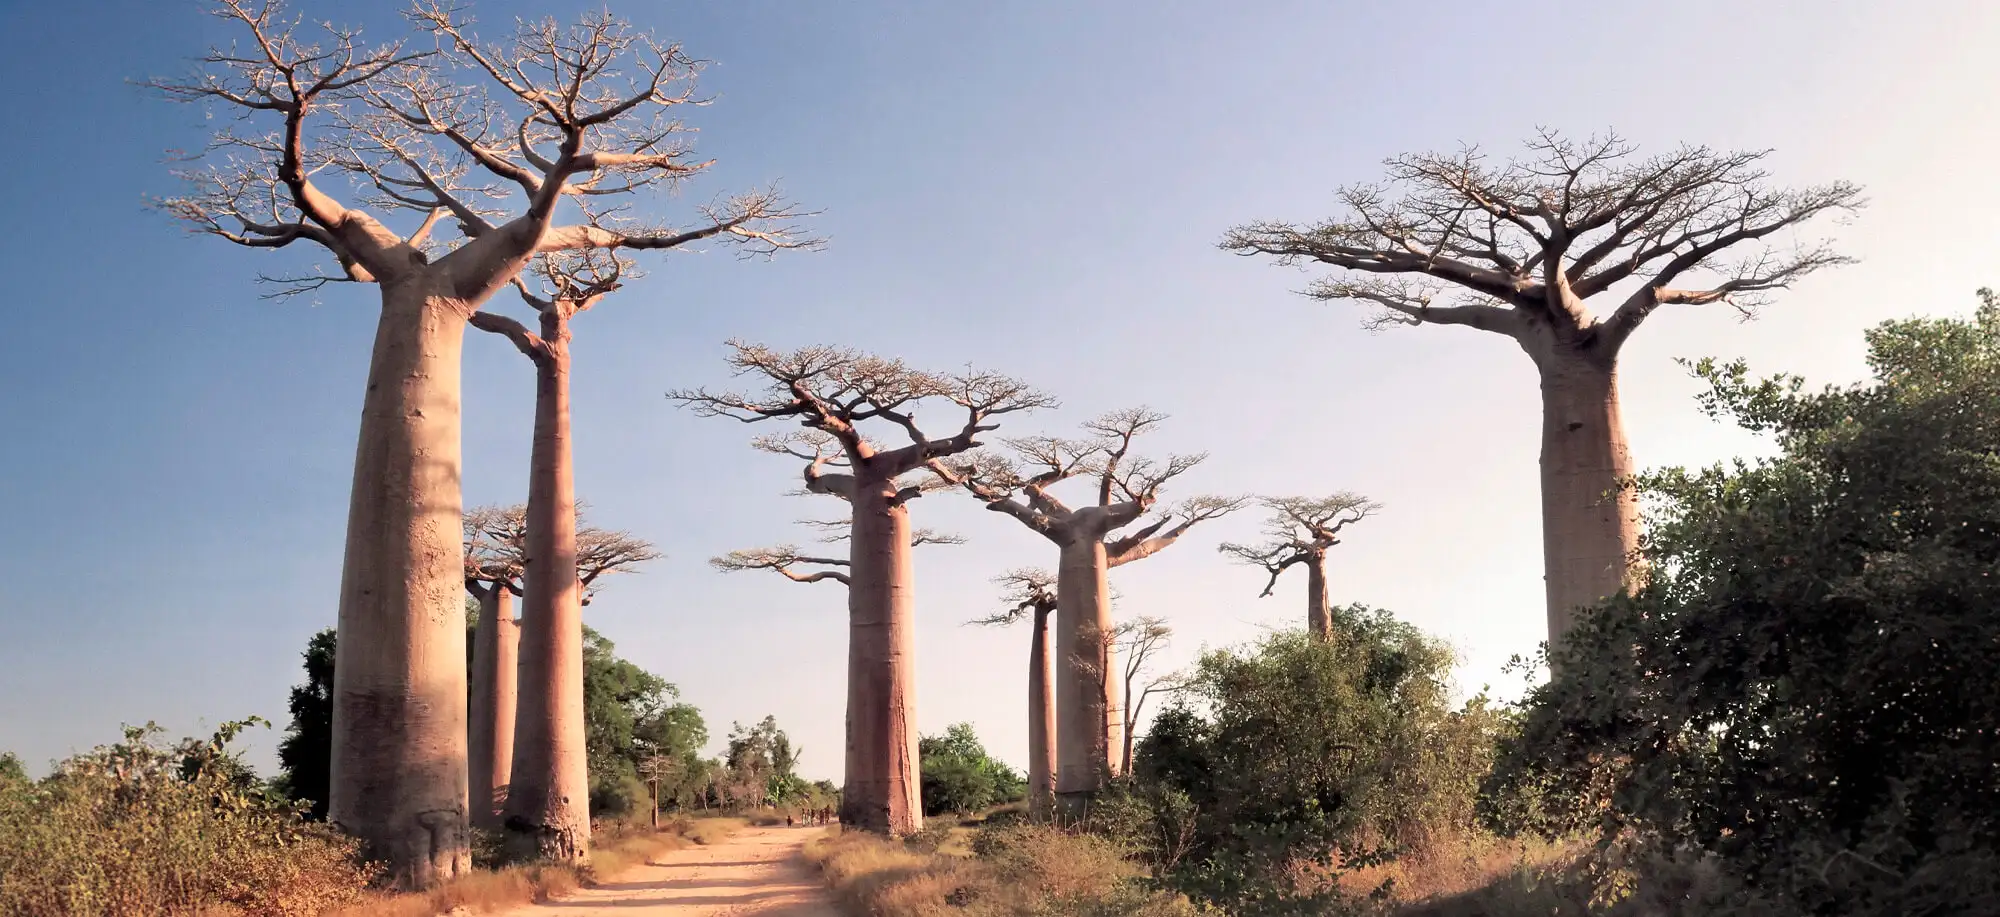  Avenida de los Baobabs